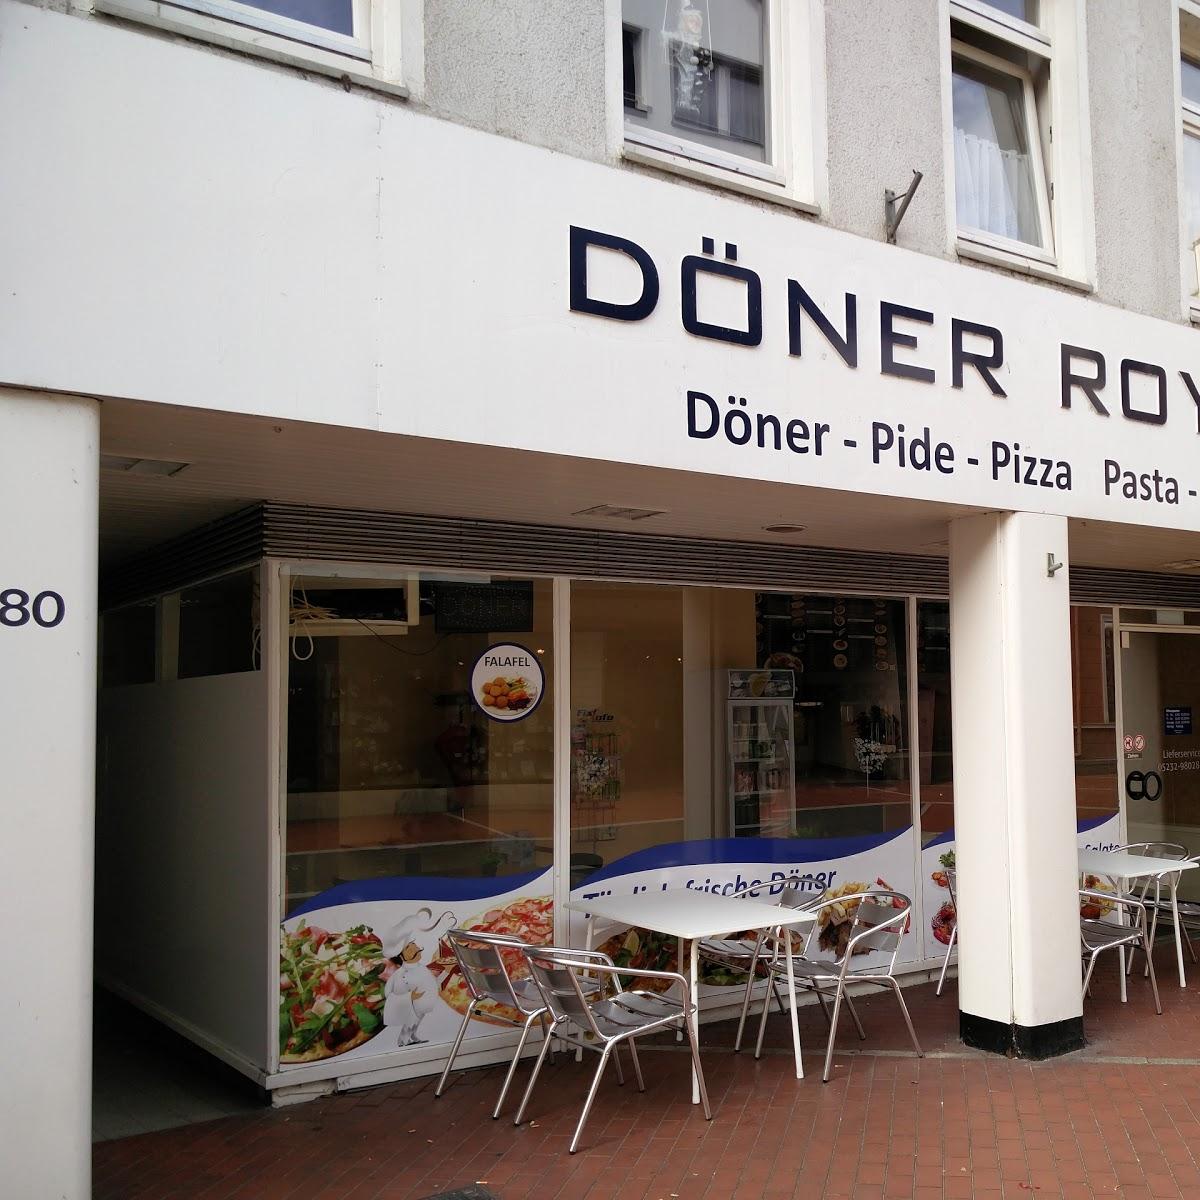 Restaurant "Döner Royal" in Lage